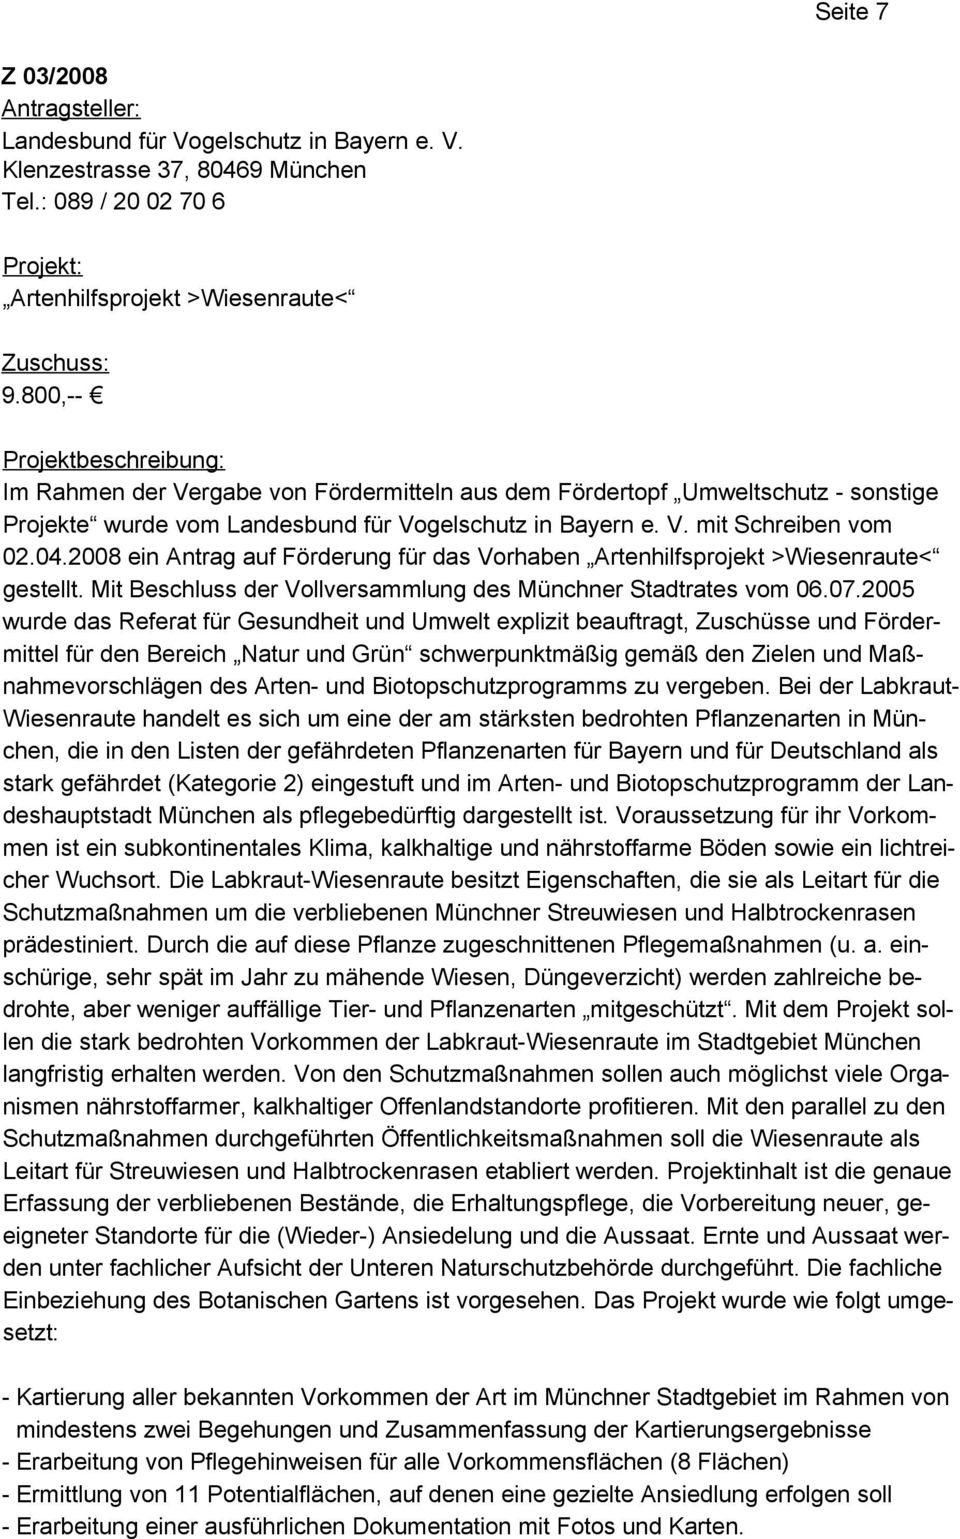 2008 ein Antrag auf Förderung für das Vorhaben Artenhilfsprojekt >Wiesenraute< gestellt. Mit Beschluss der Vollversammlung des Münchner Stadtrates vom 06.07.